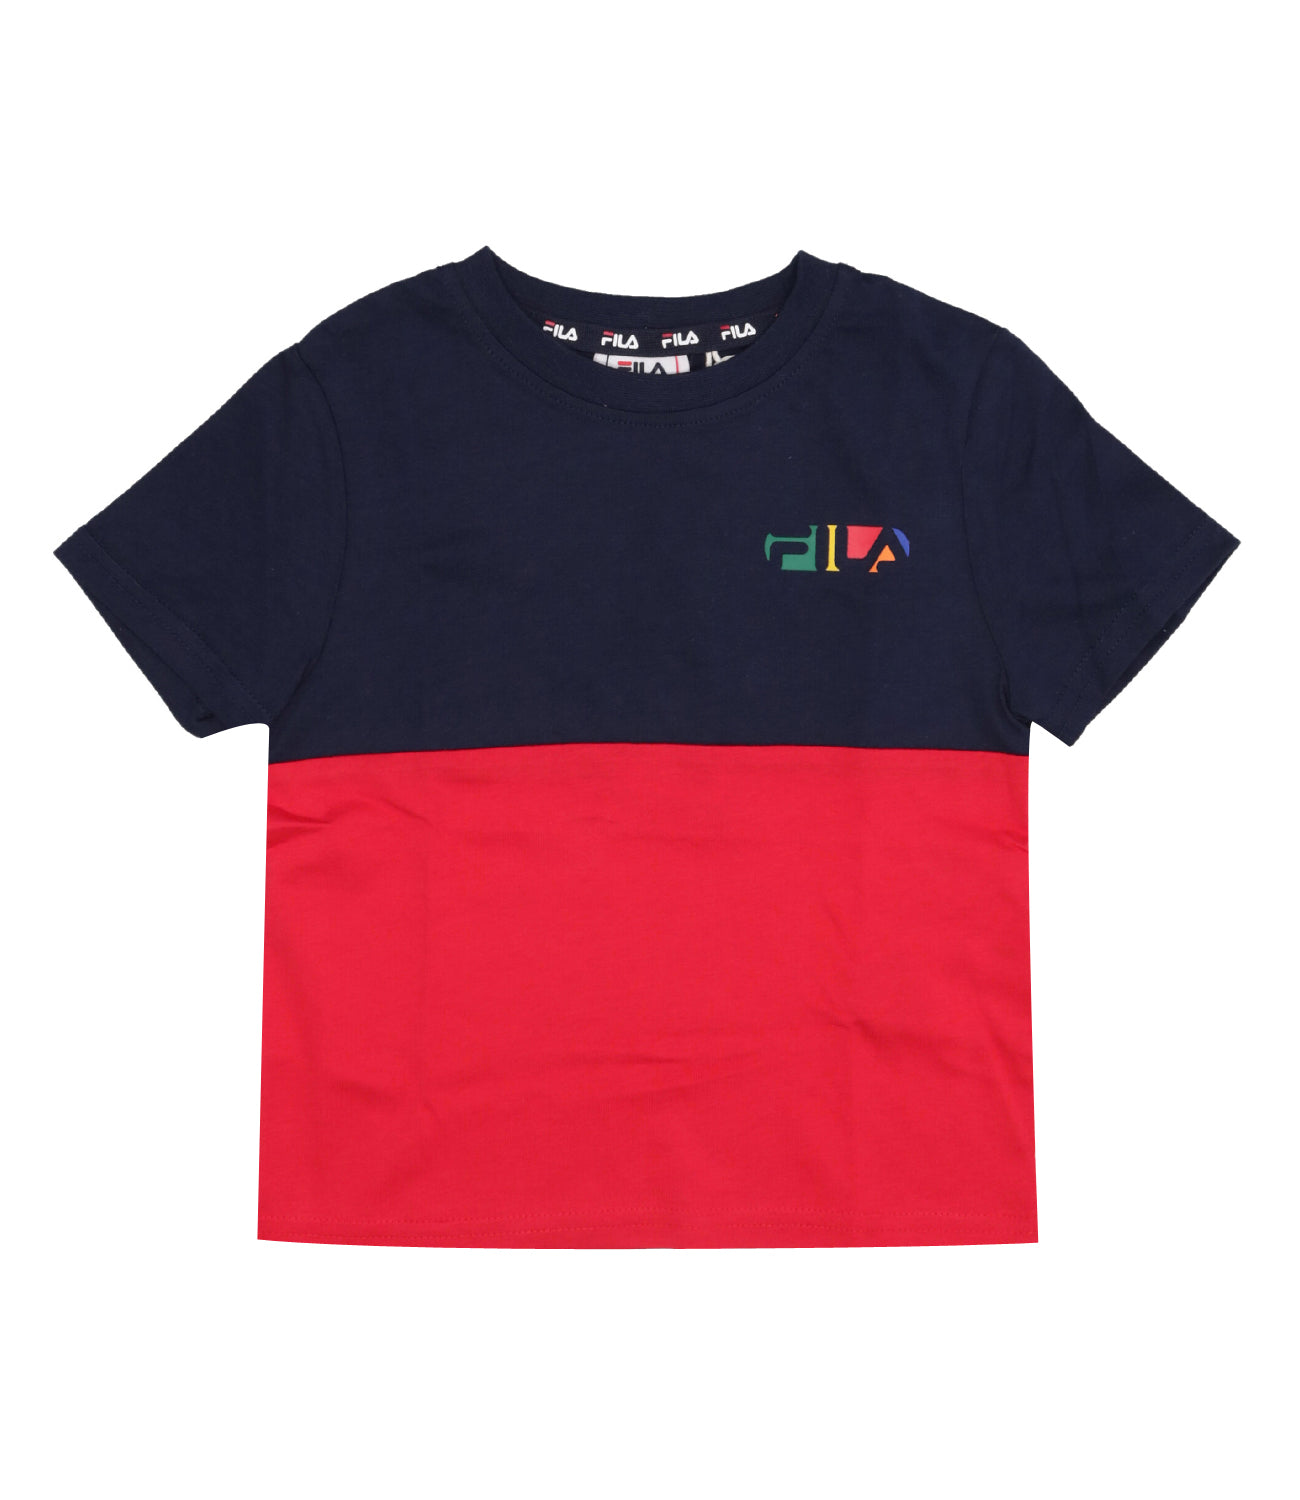 Fila Kids | T-Shirt Blu e Rosso